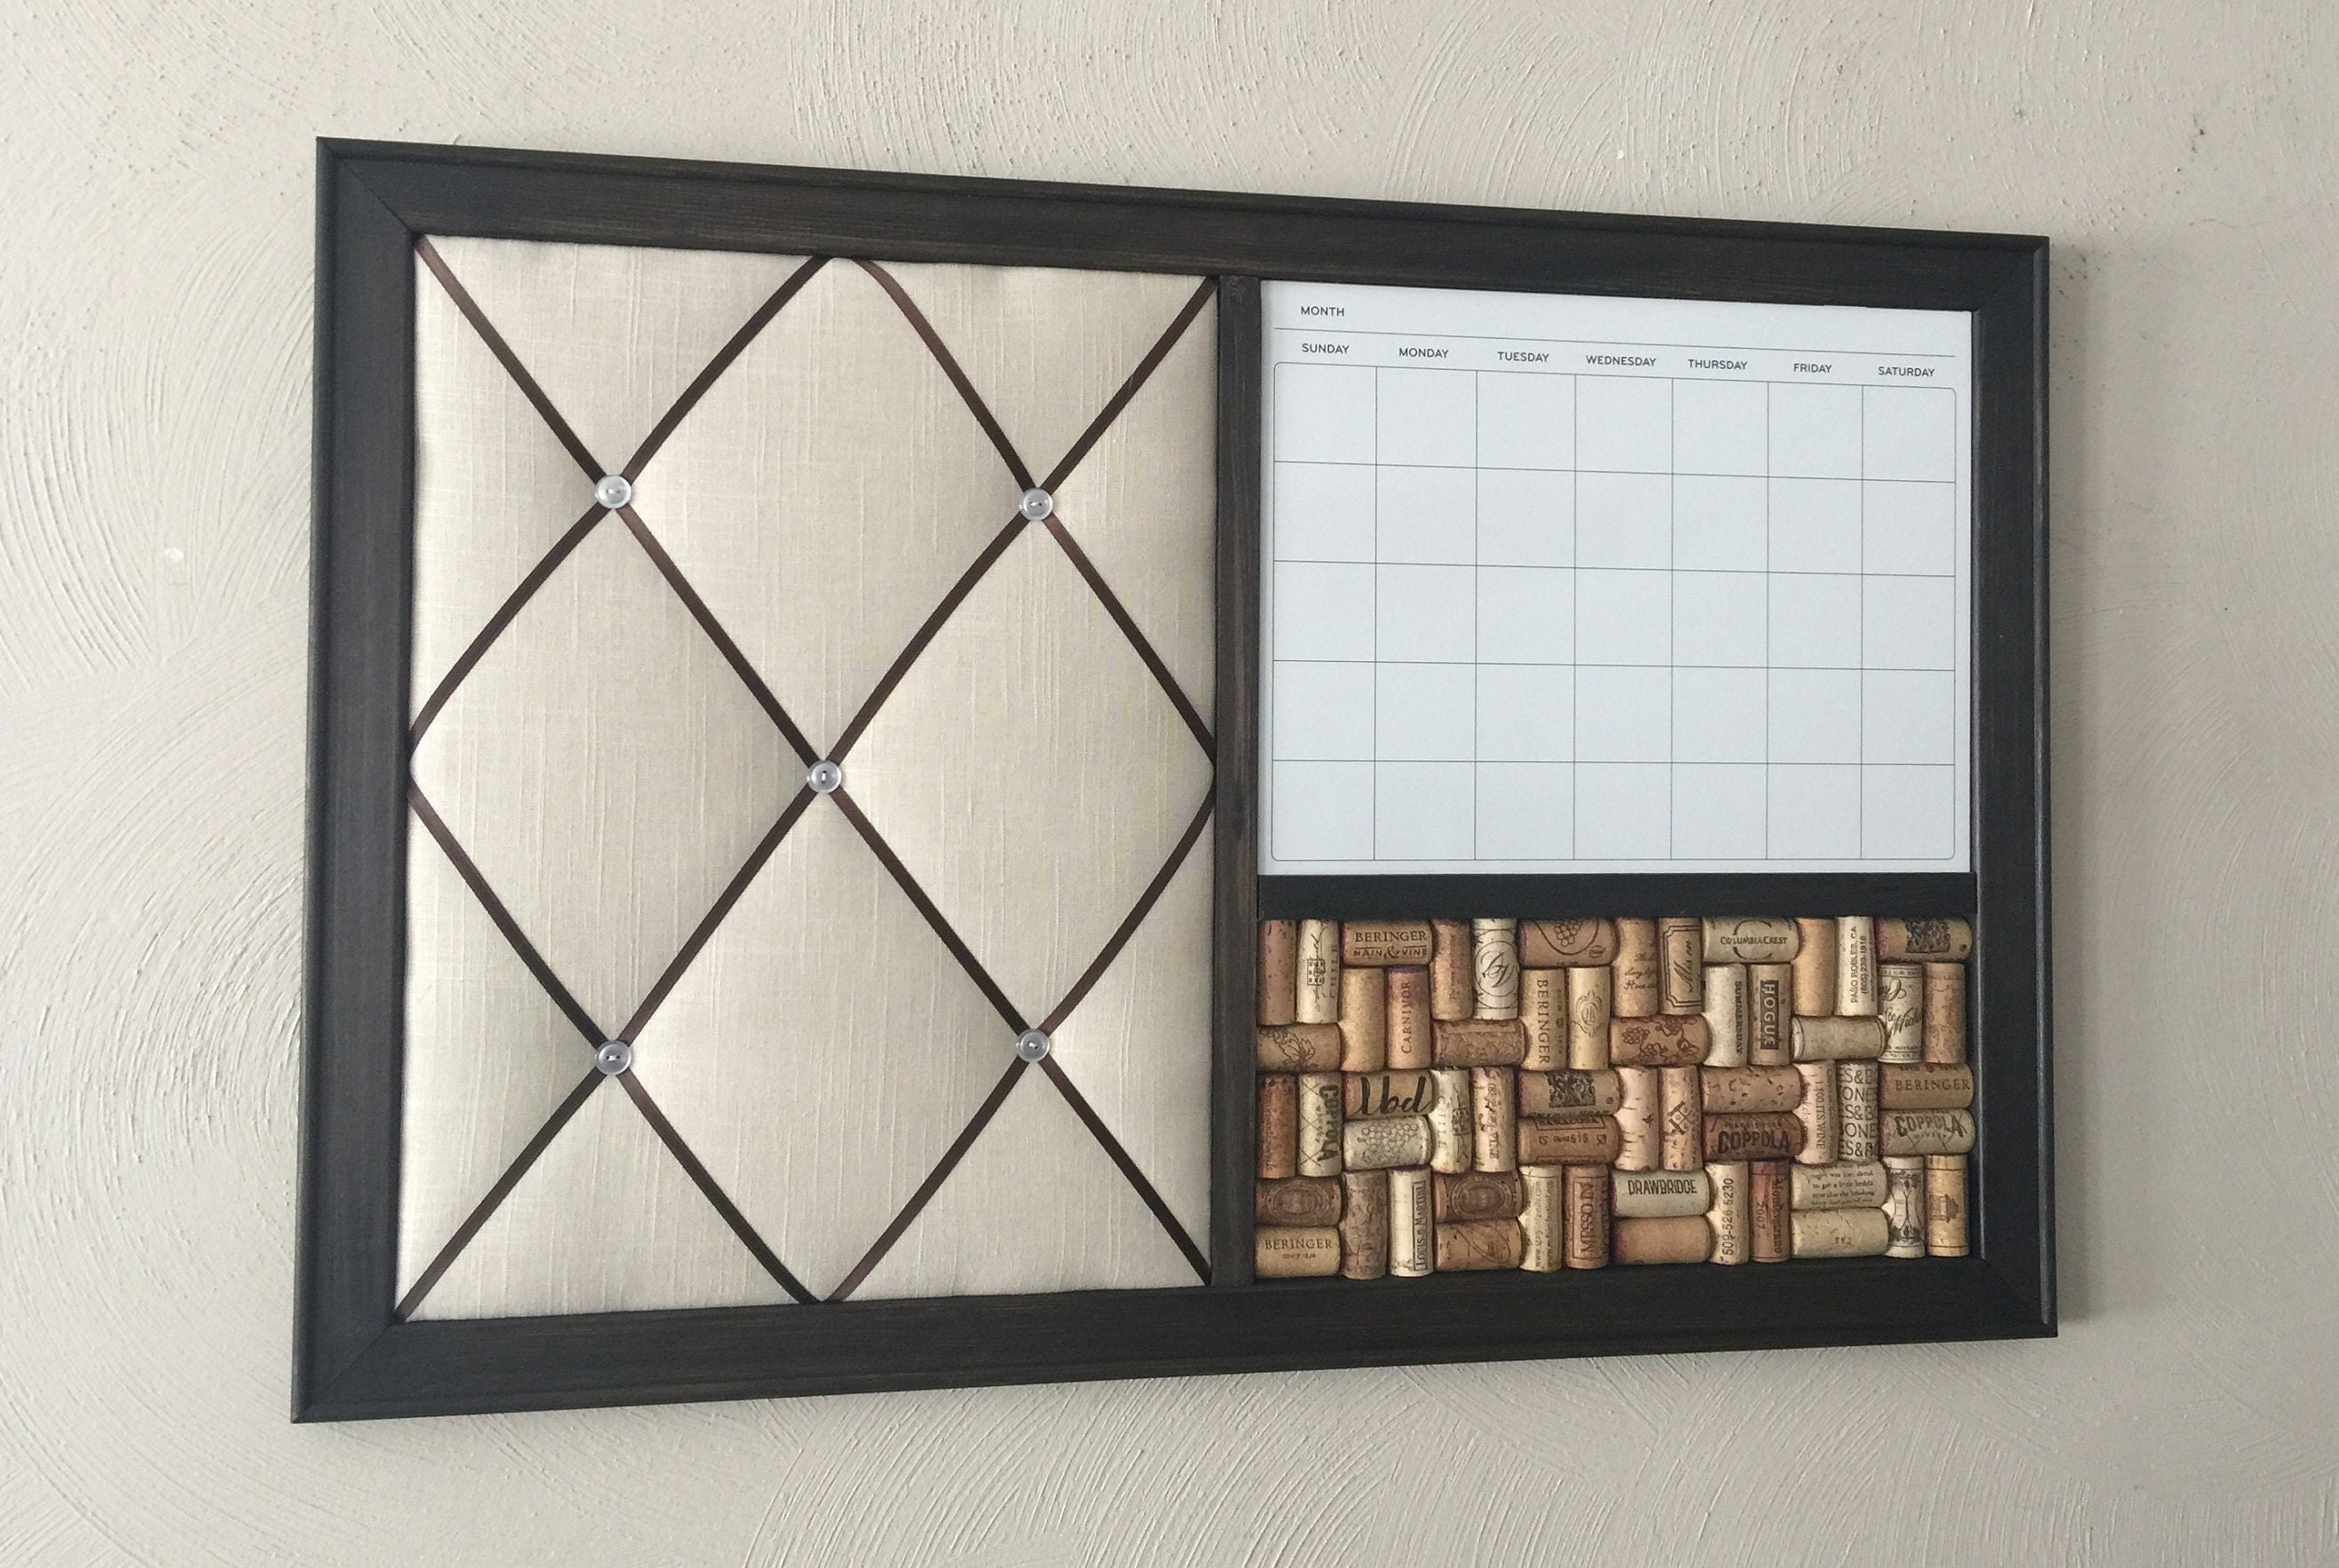 Flip Chart Hanger for Tile Whiteboard Panels